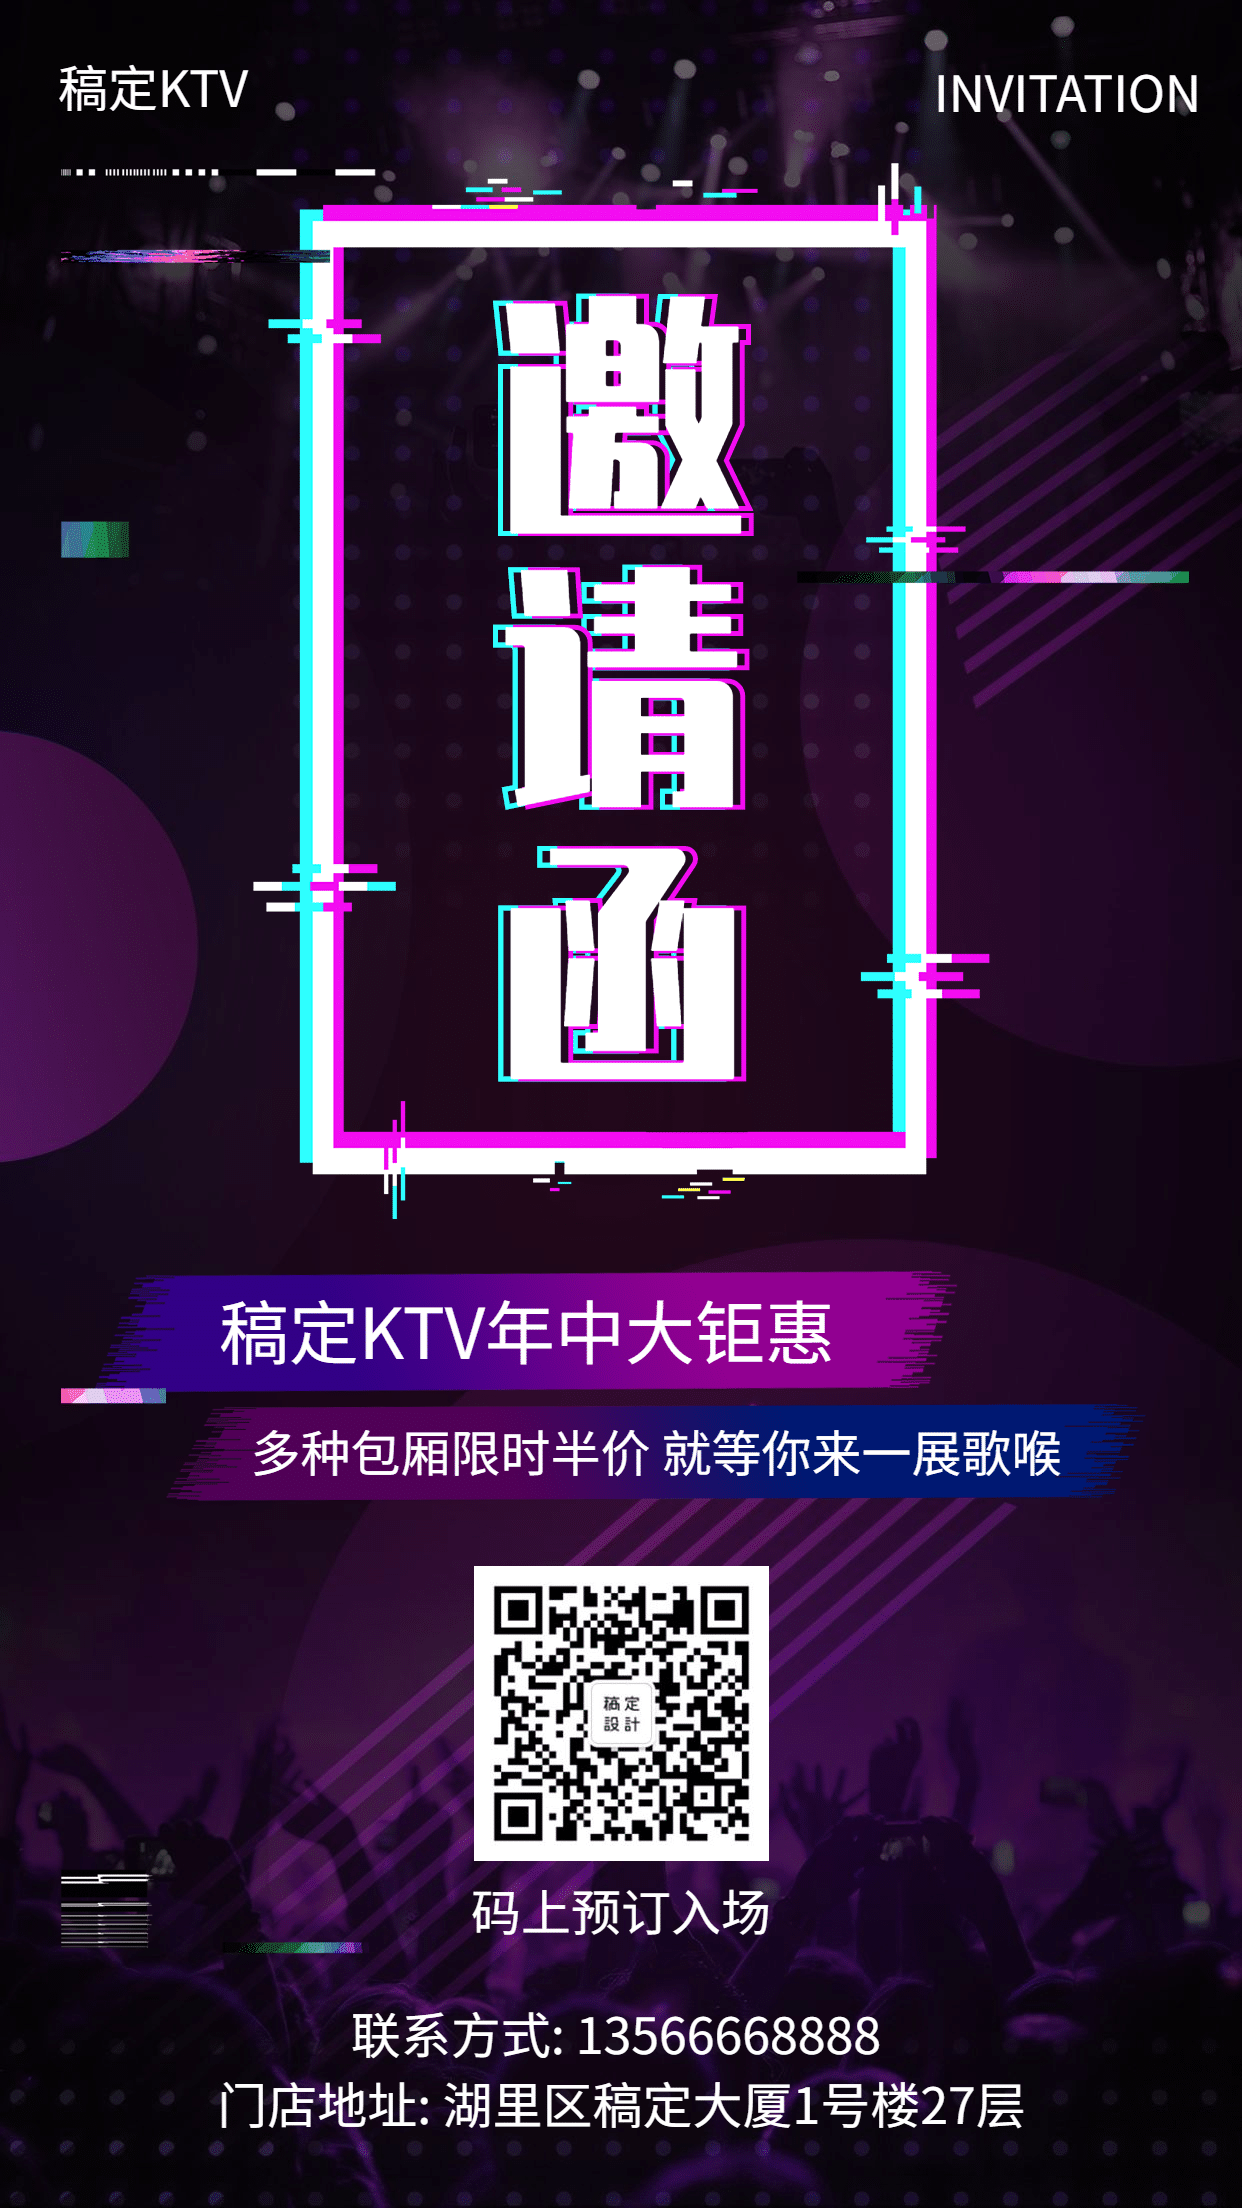 休闲娱乐抖音酷炫KTV邀请函手机海报预览效果